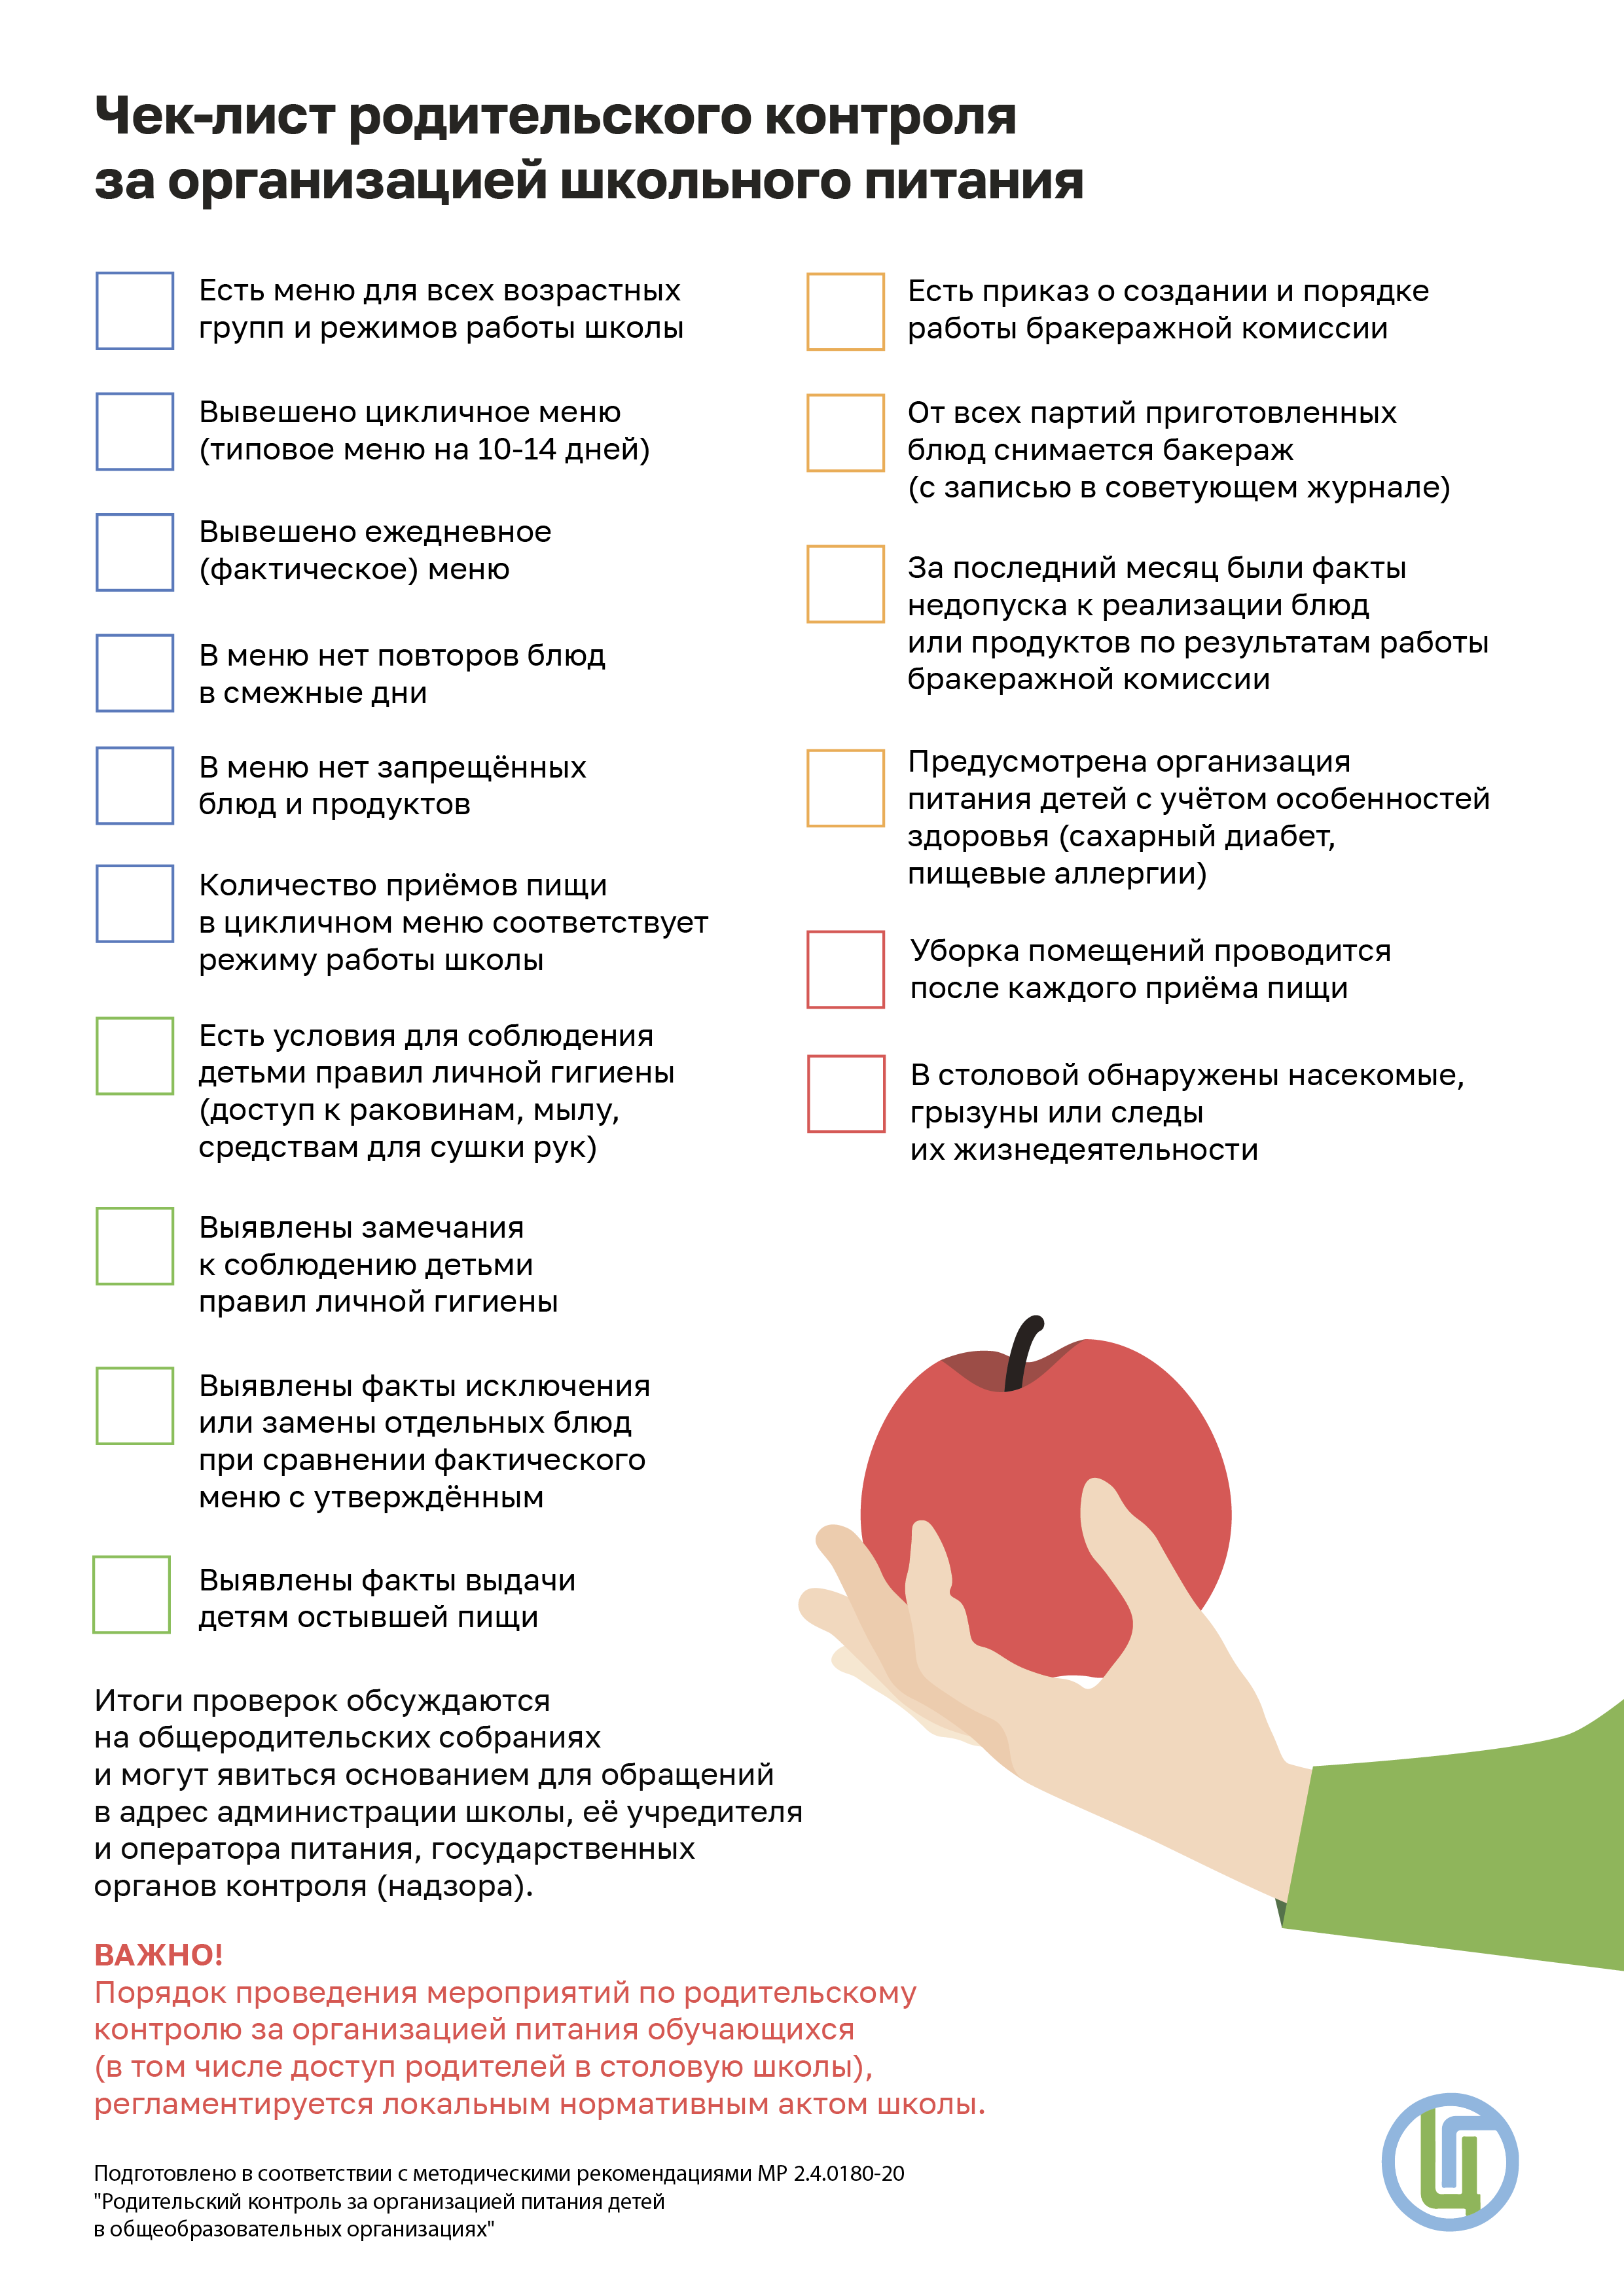 Чек-лист родительского контроля за организацией школьного питания